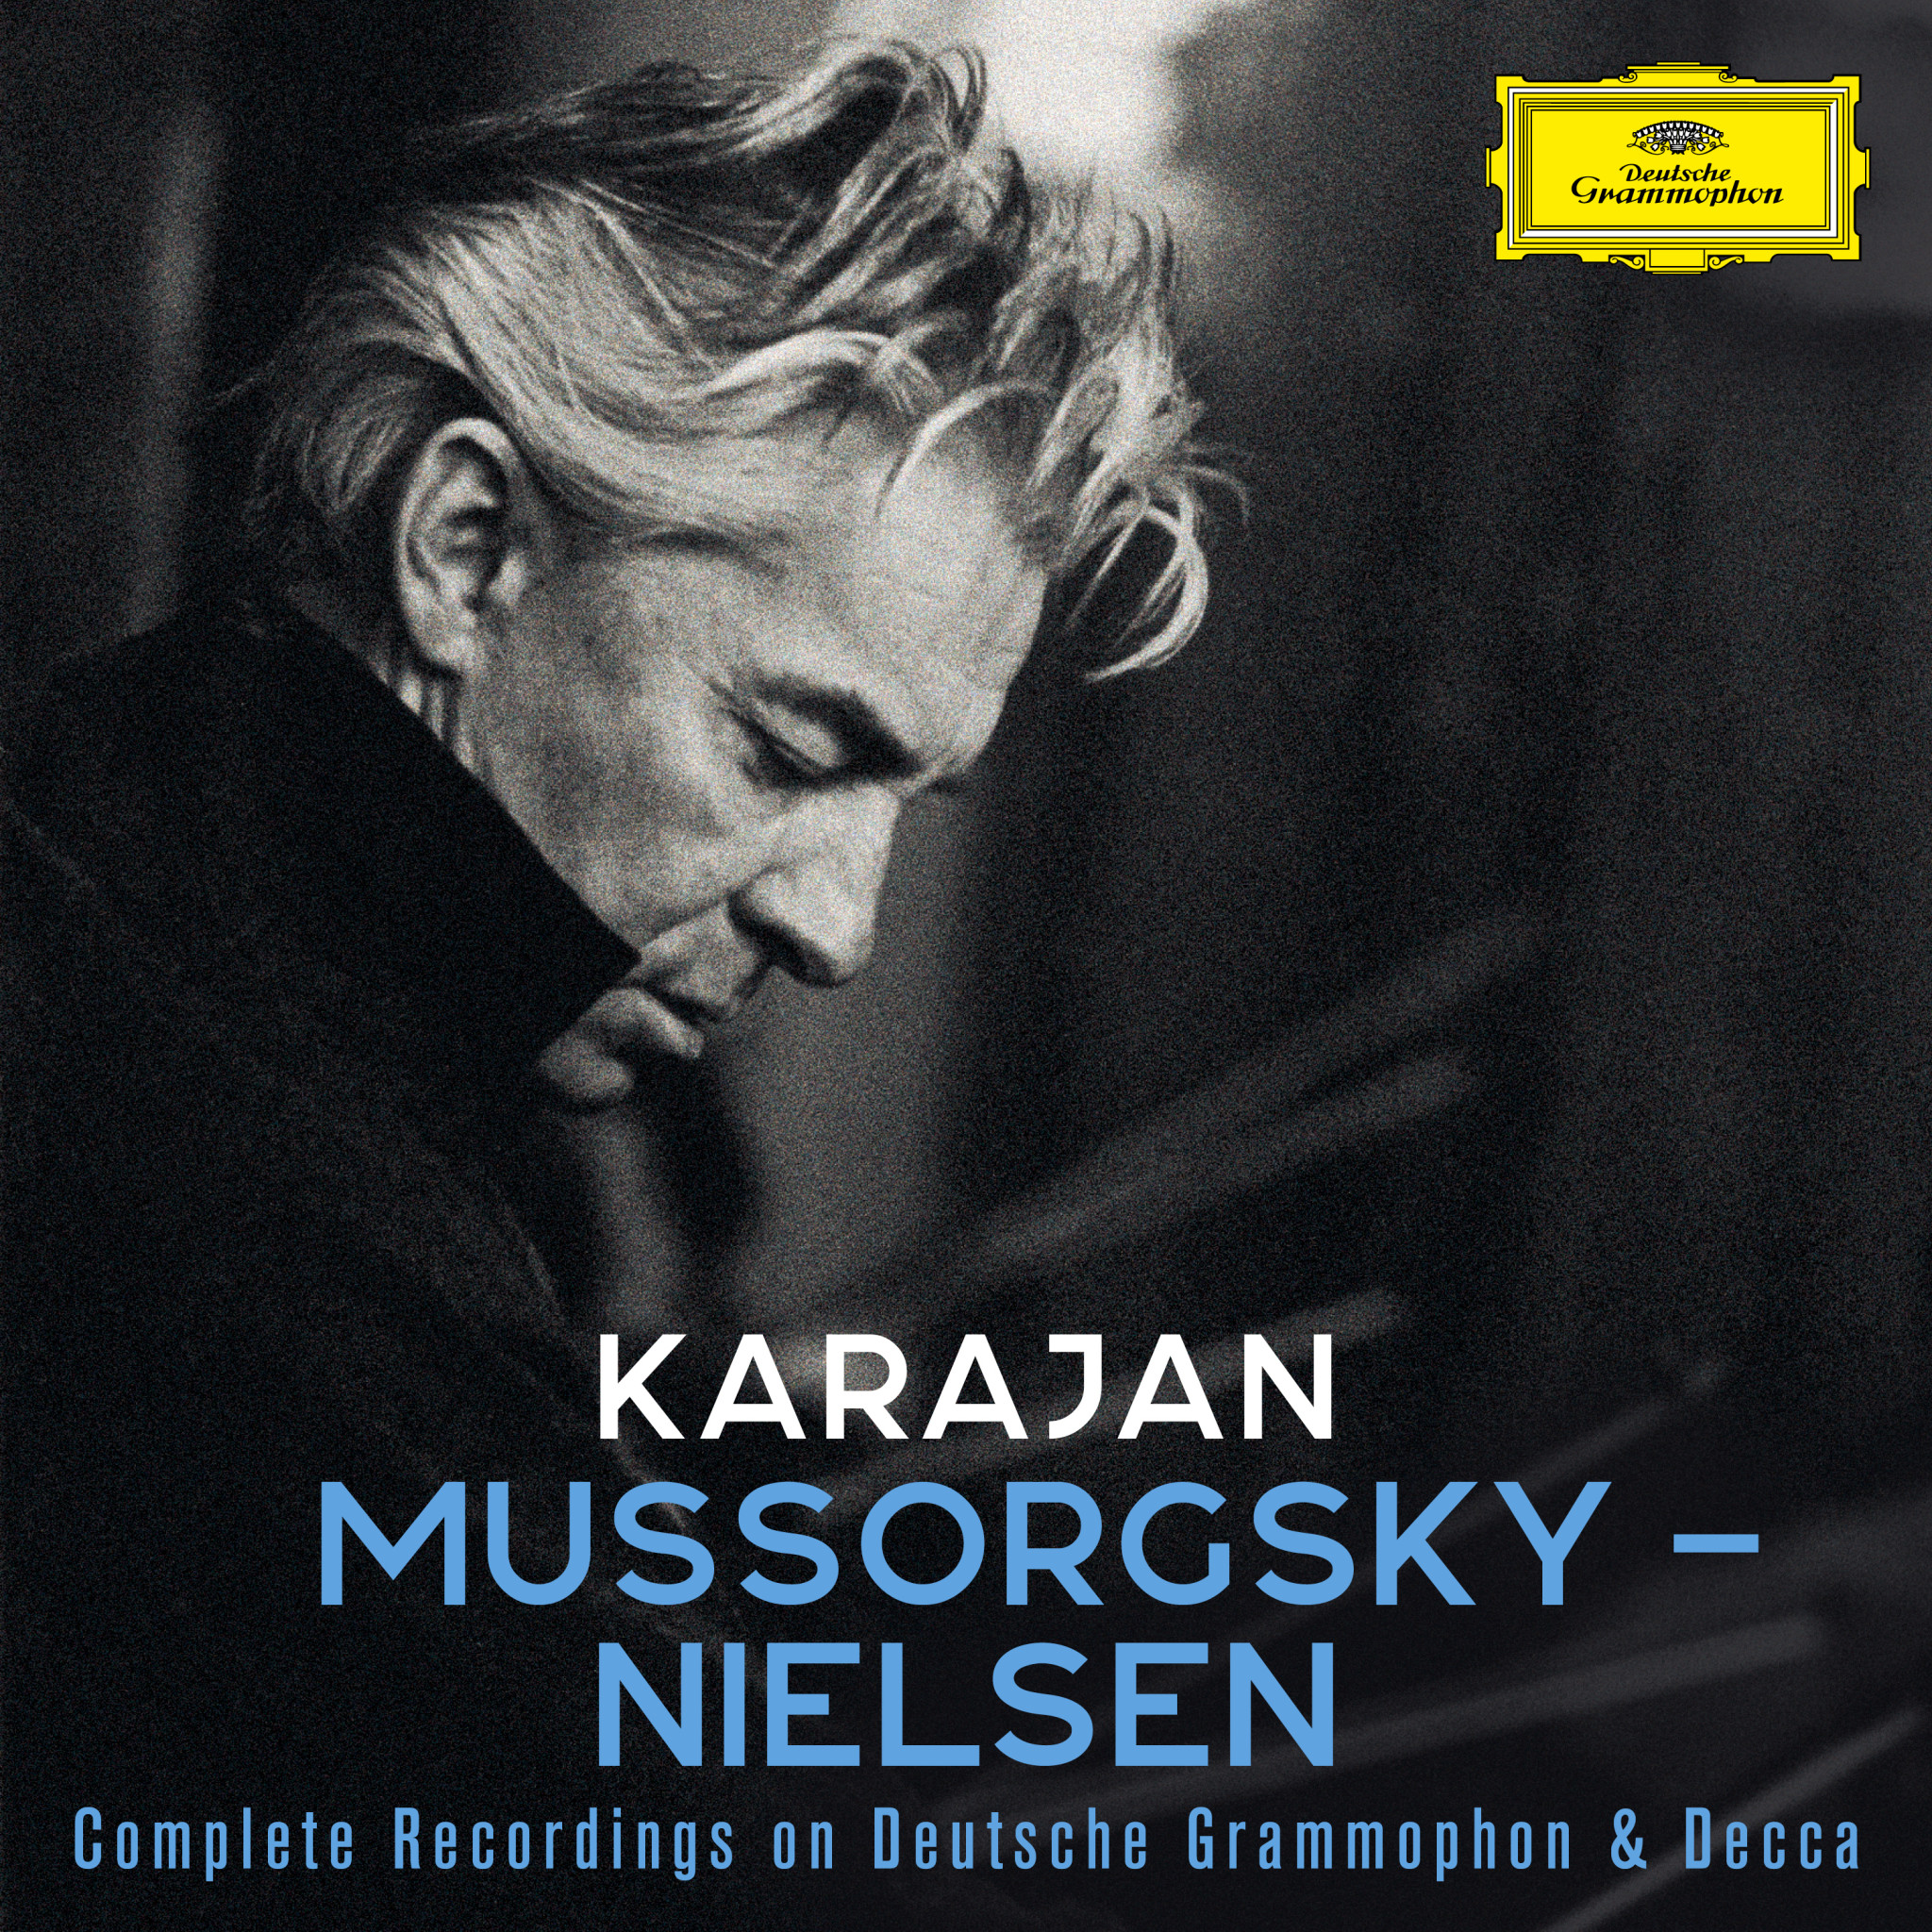 Karajan: Mussorgsky - Nielsen